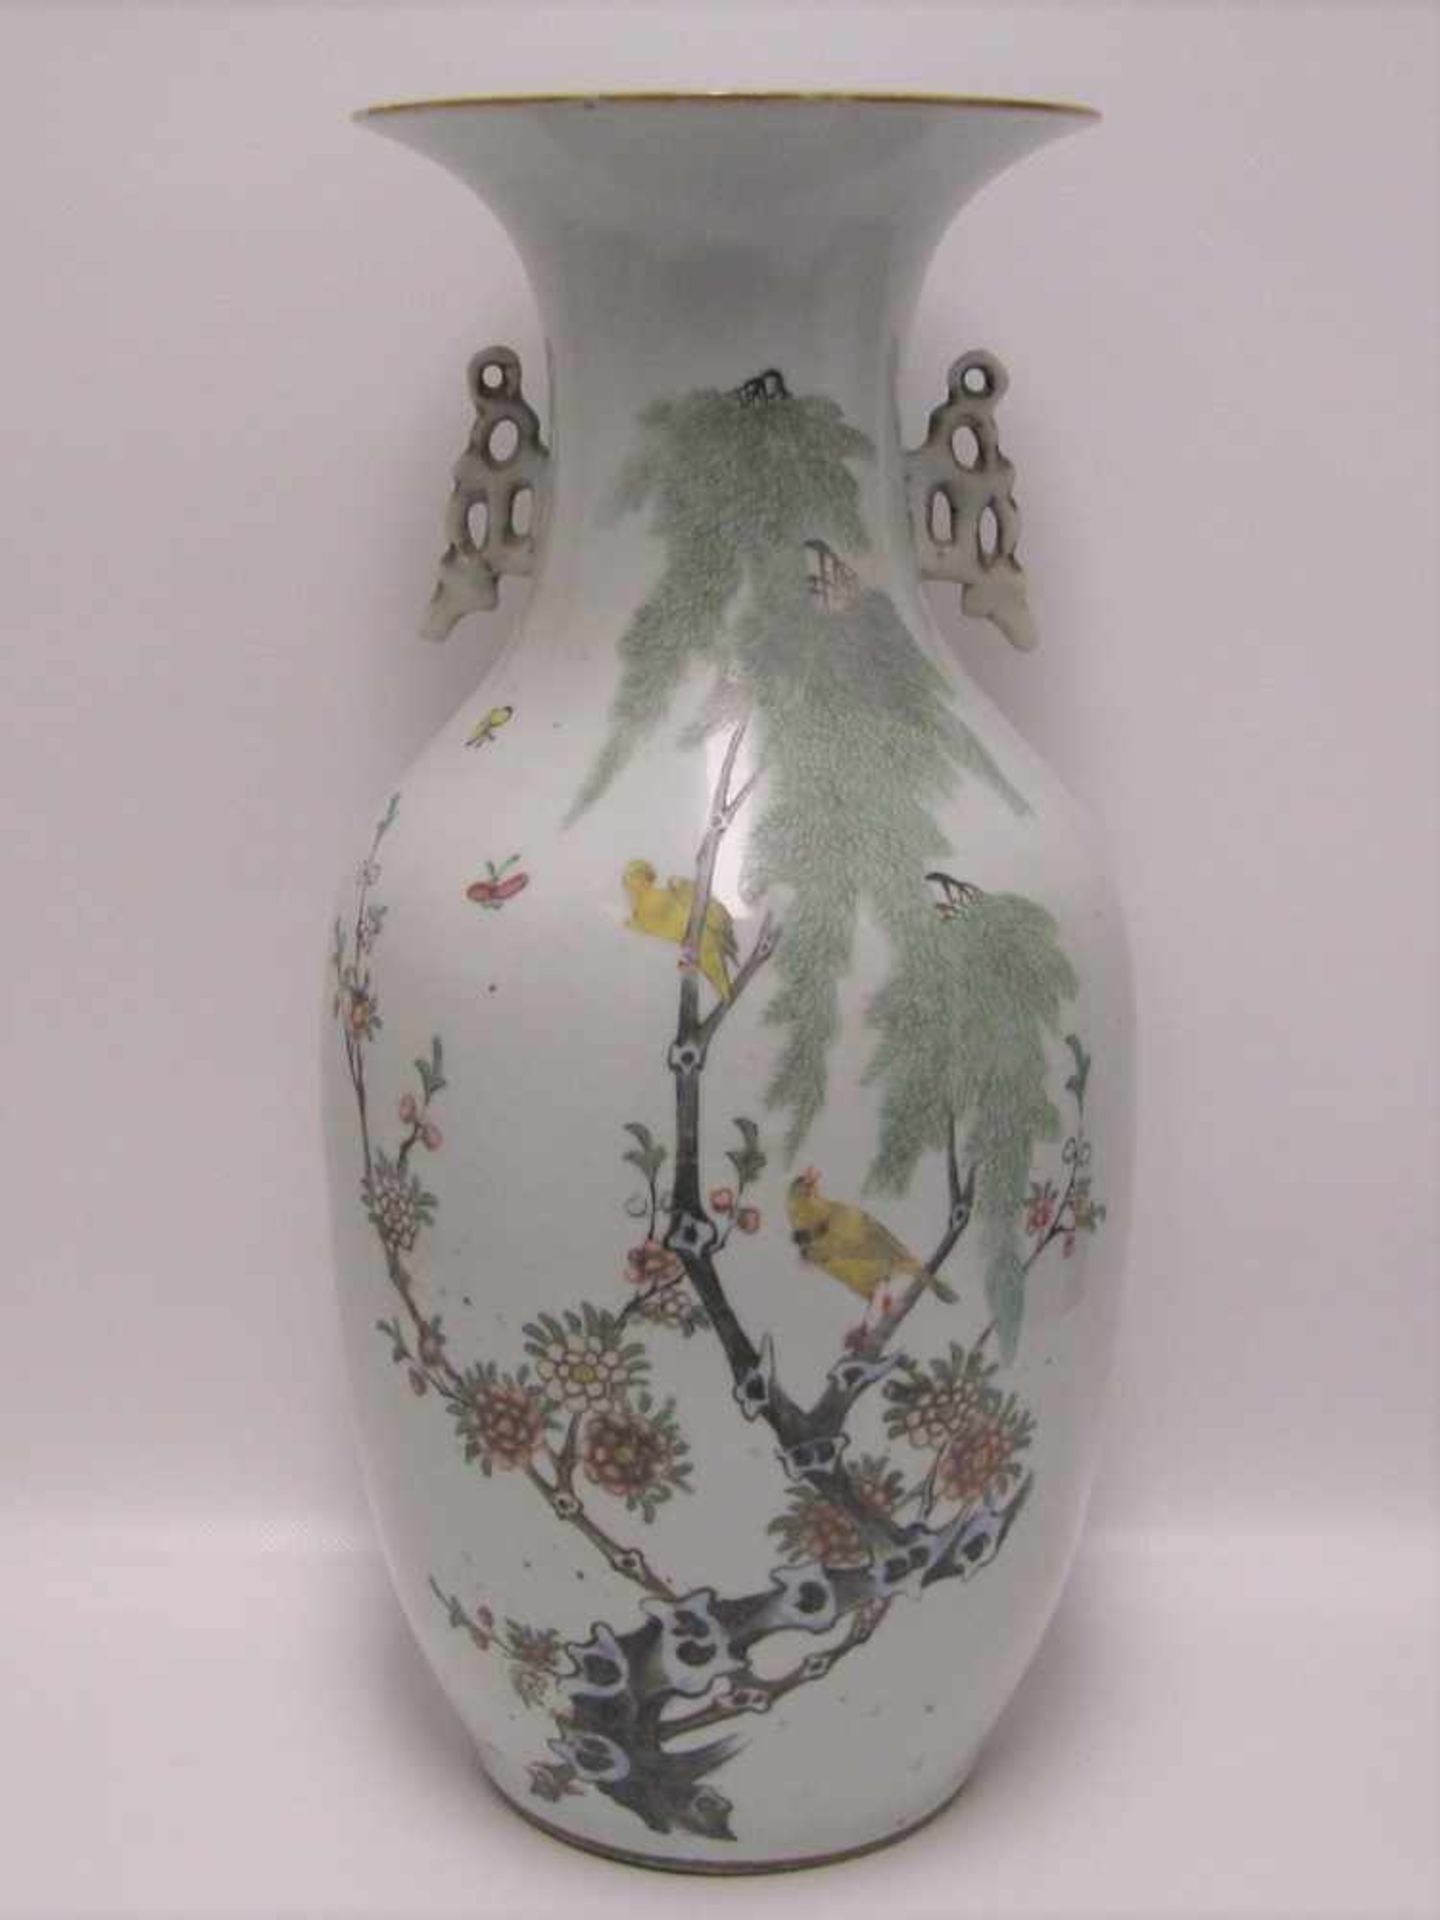 Vase, China, um 1900, Porzellan mit polychromer Blüten- und Vogelmalerei, unsign., h 44 cm, d 20